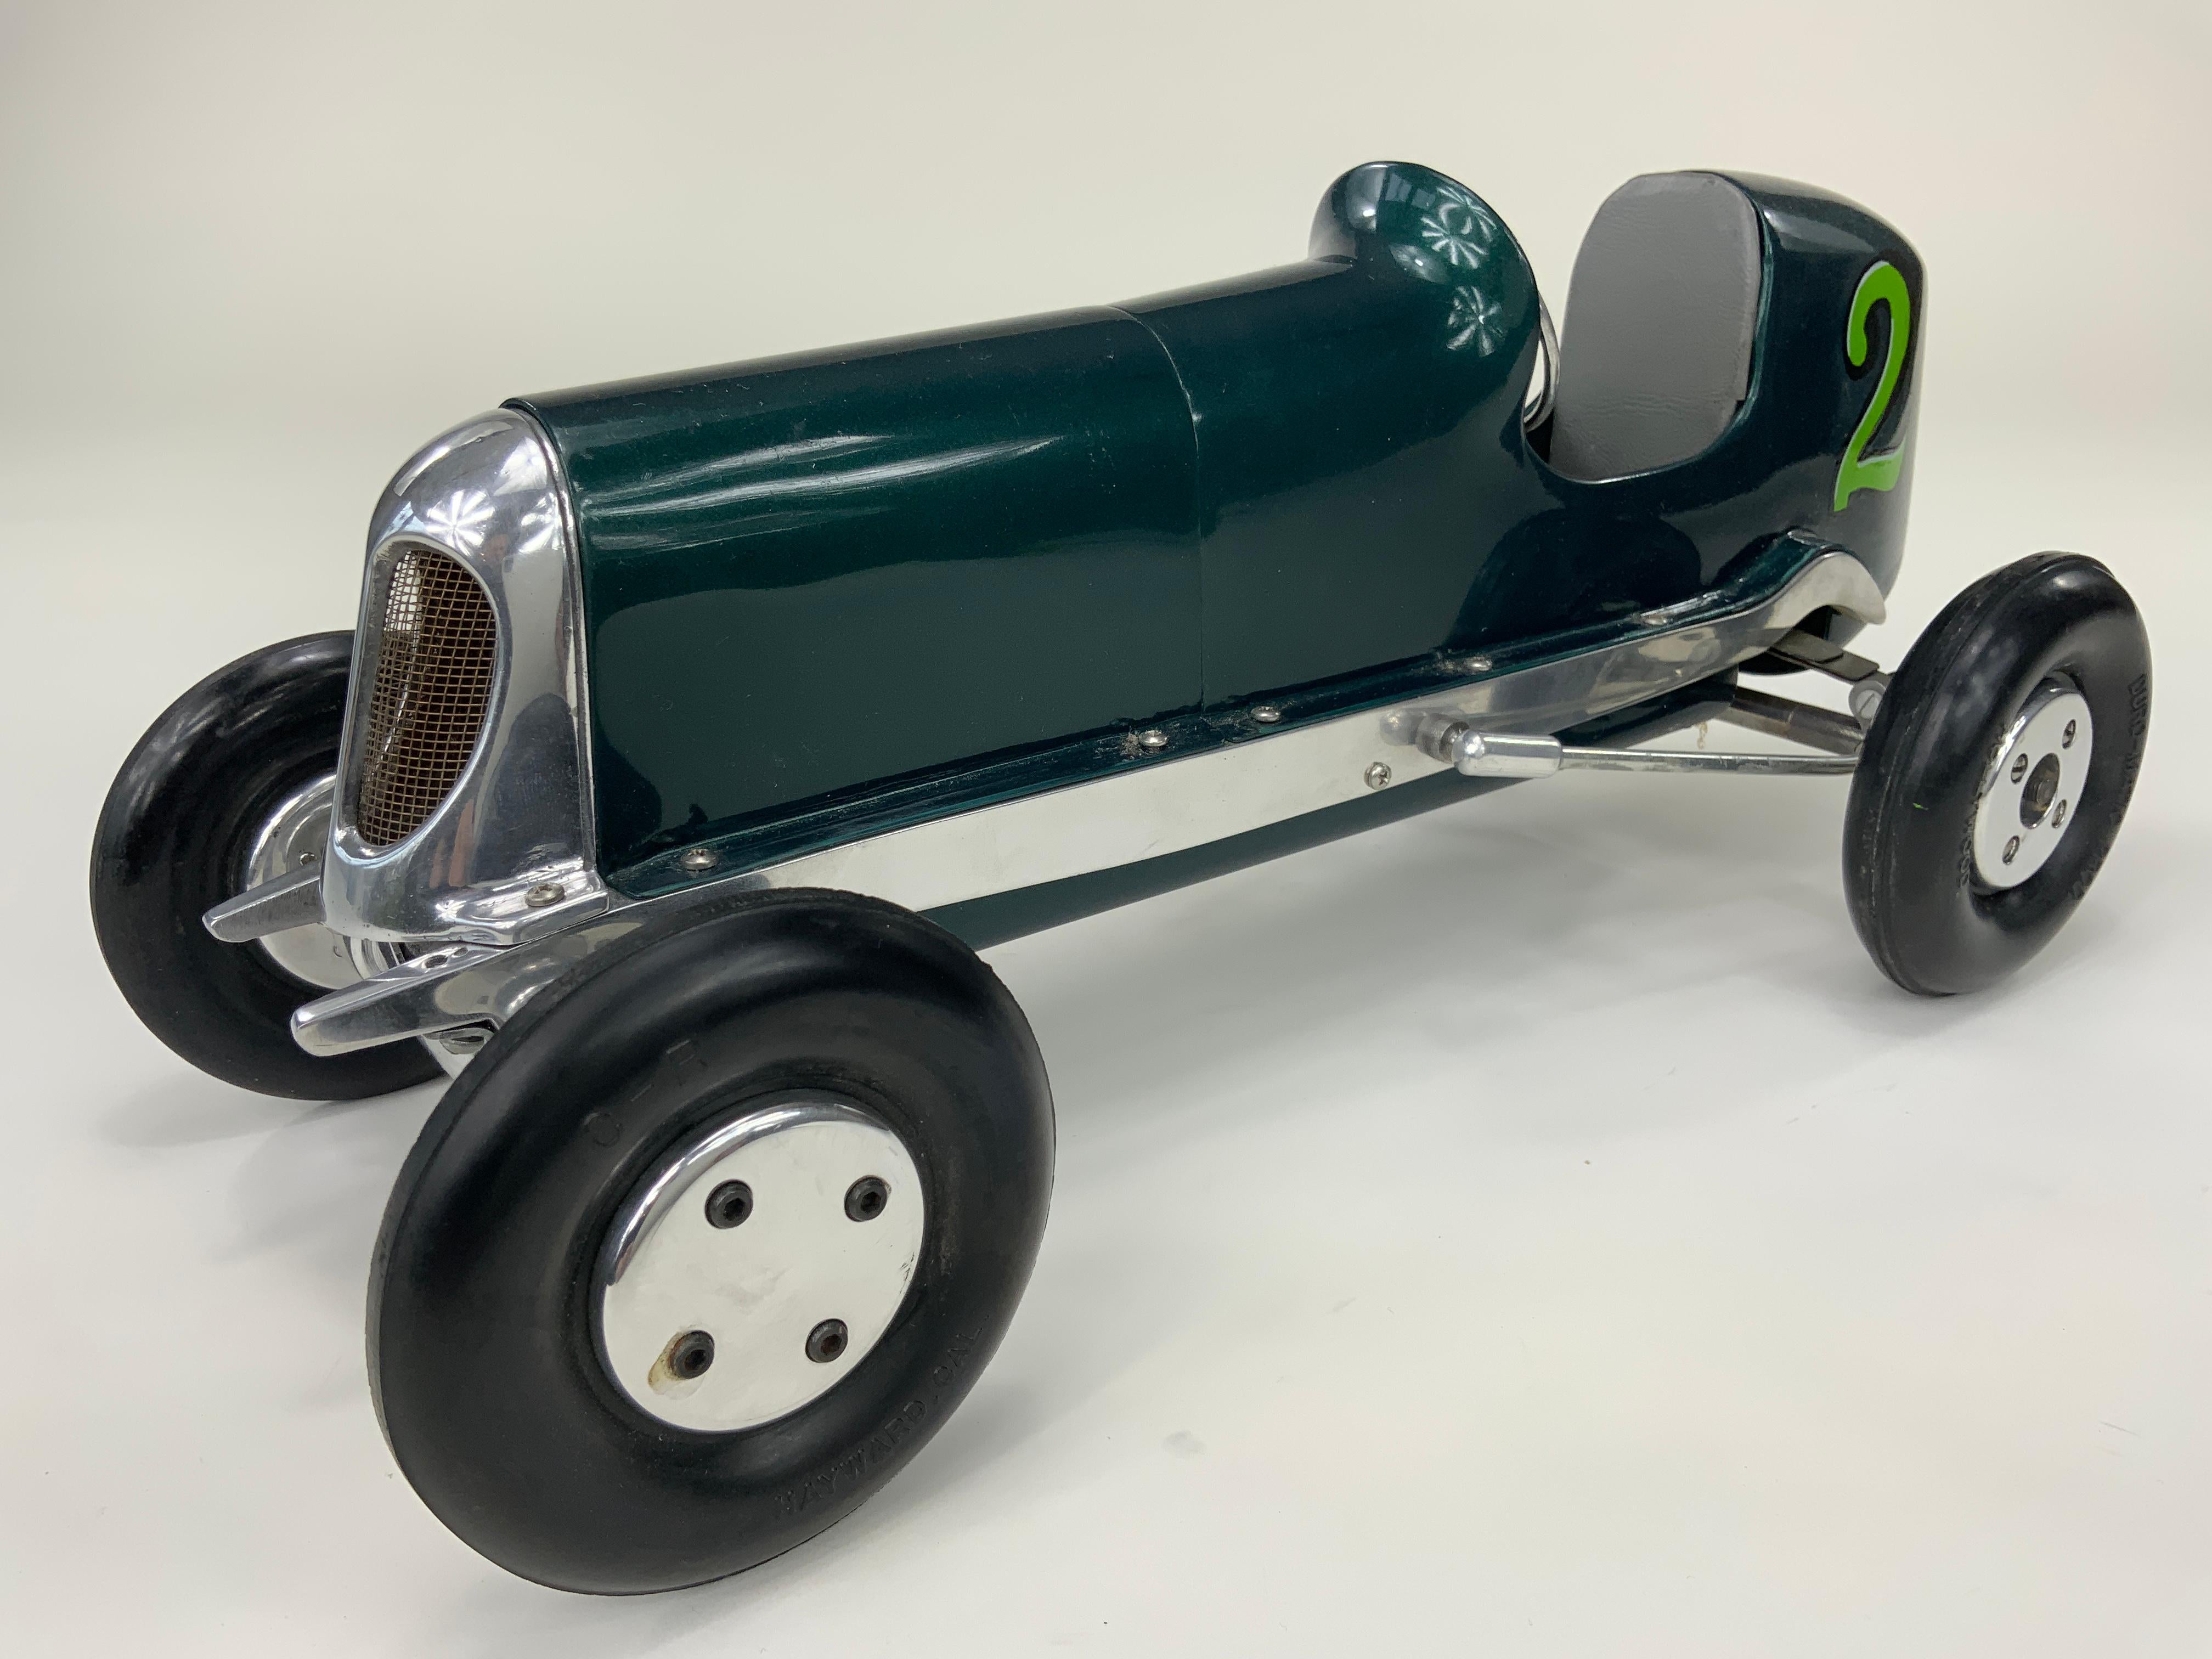 Dies ist ein Dooling Mercury First Series Tether Car, der 1939 von den Dooling-Brüdern Tom, Russell und Harris gebaut wurde.  Sie begannen 1937 mit dem Bau von Rennwagen zu ihrem eigenen Vergnügen.  Diese frühen kruden, buggyähnlichen Kreationen,